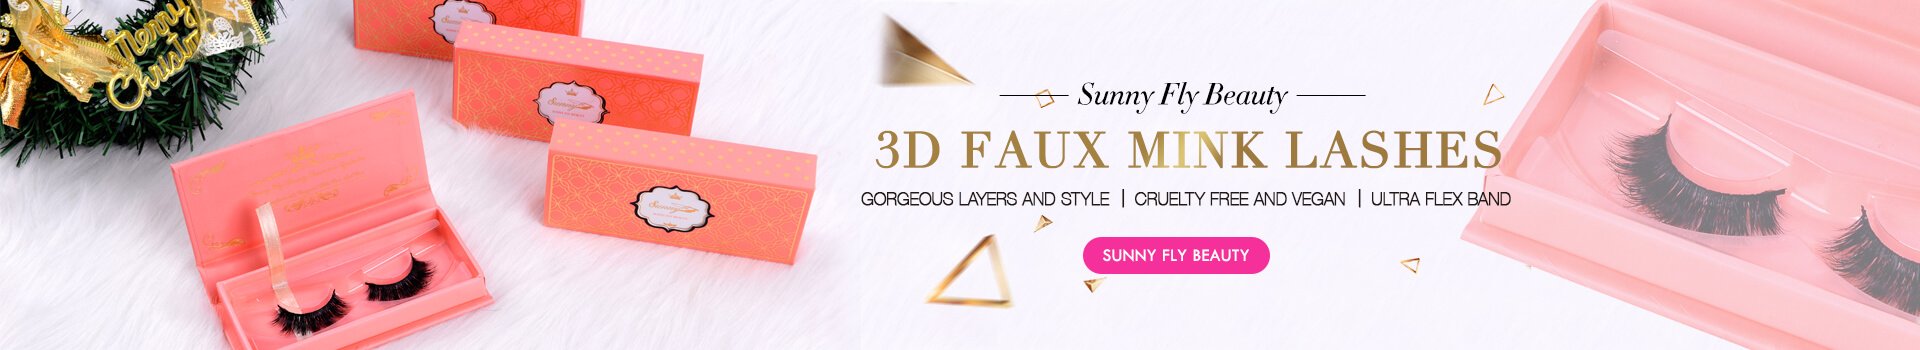 3D Faux Mink Lashes SD45